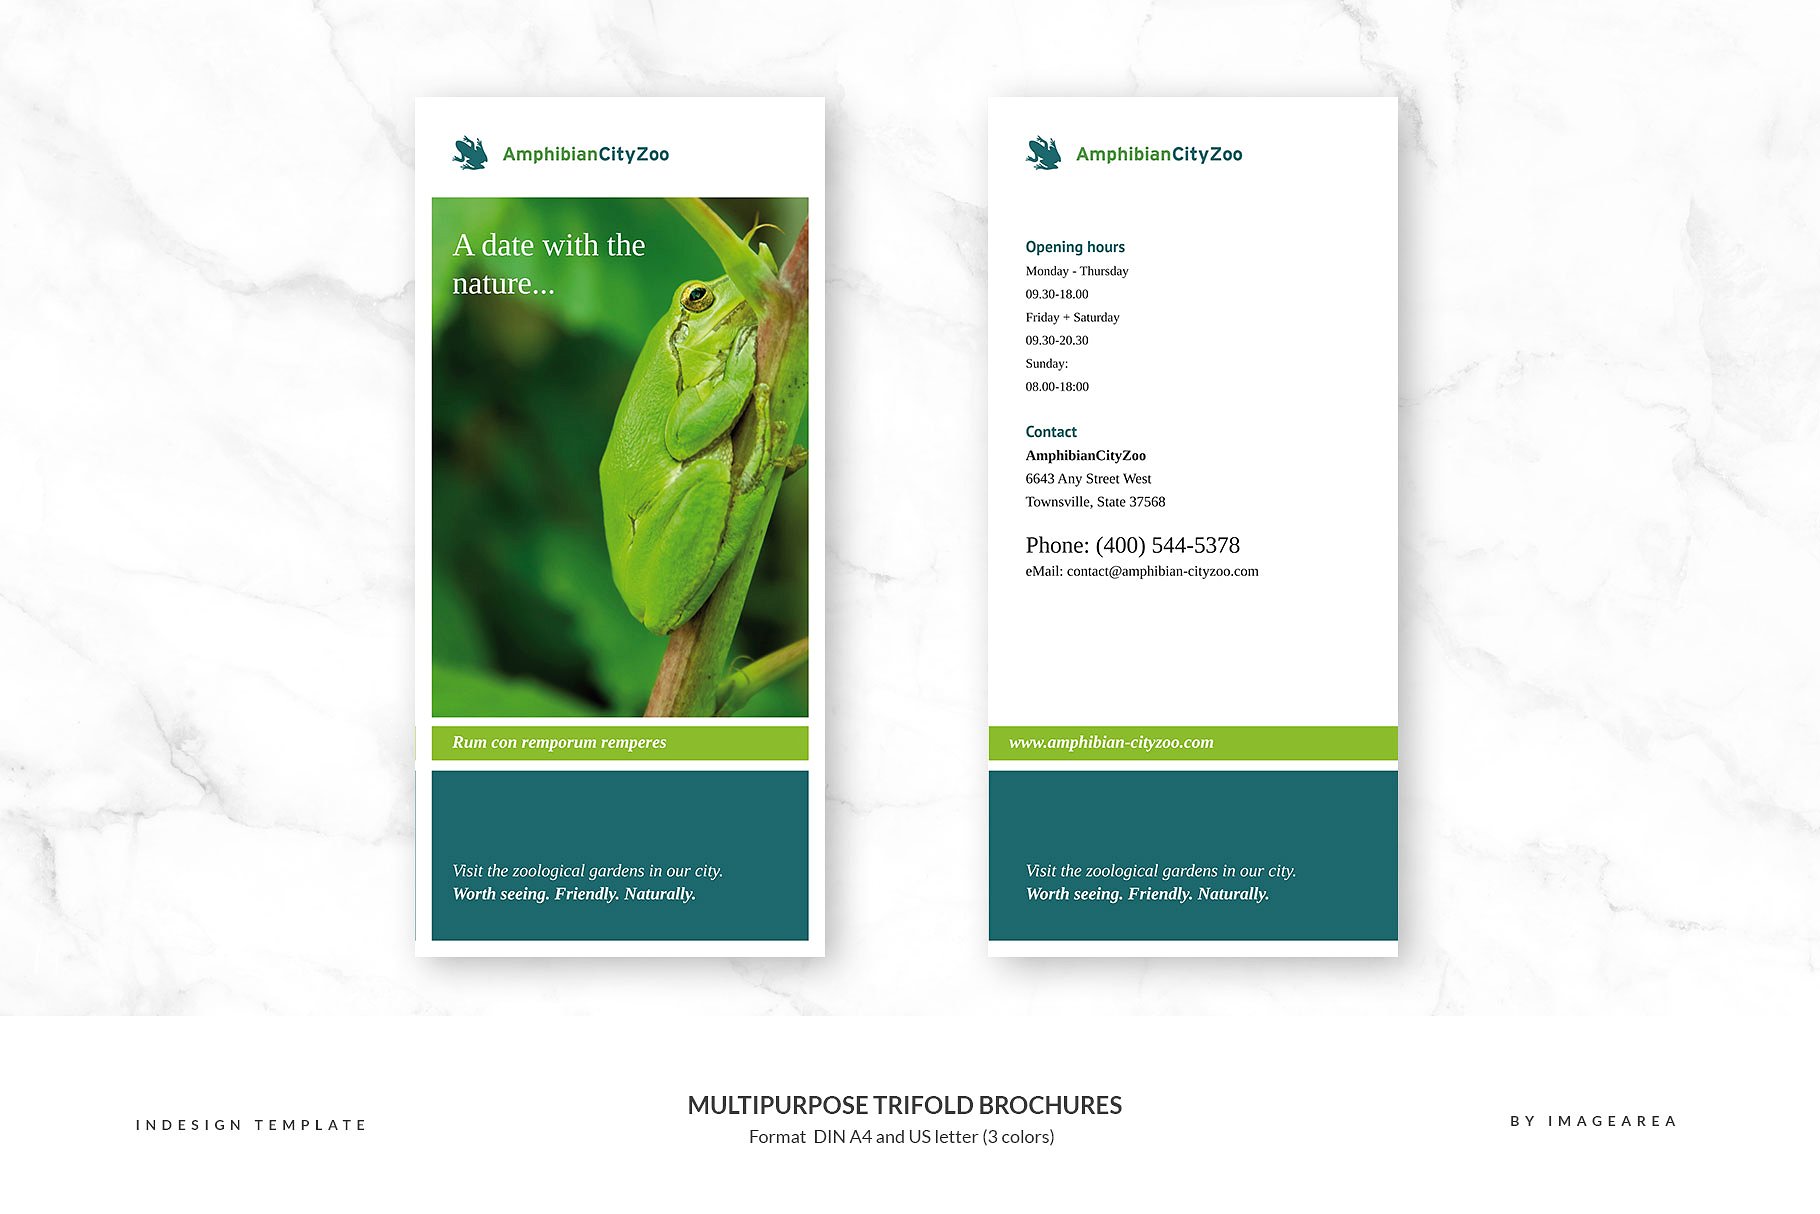 企业商业多用途折页小册子模板 Multipurpose Trifold Brochures插图